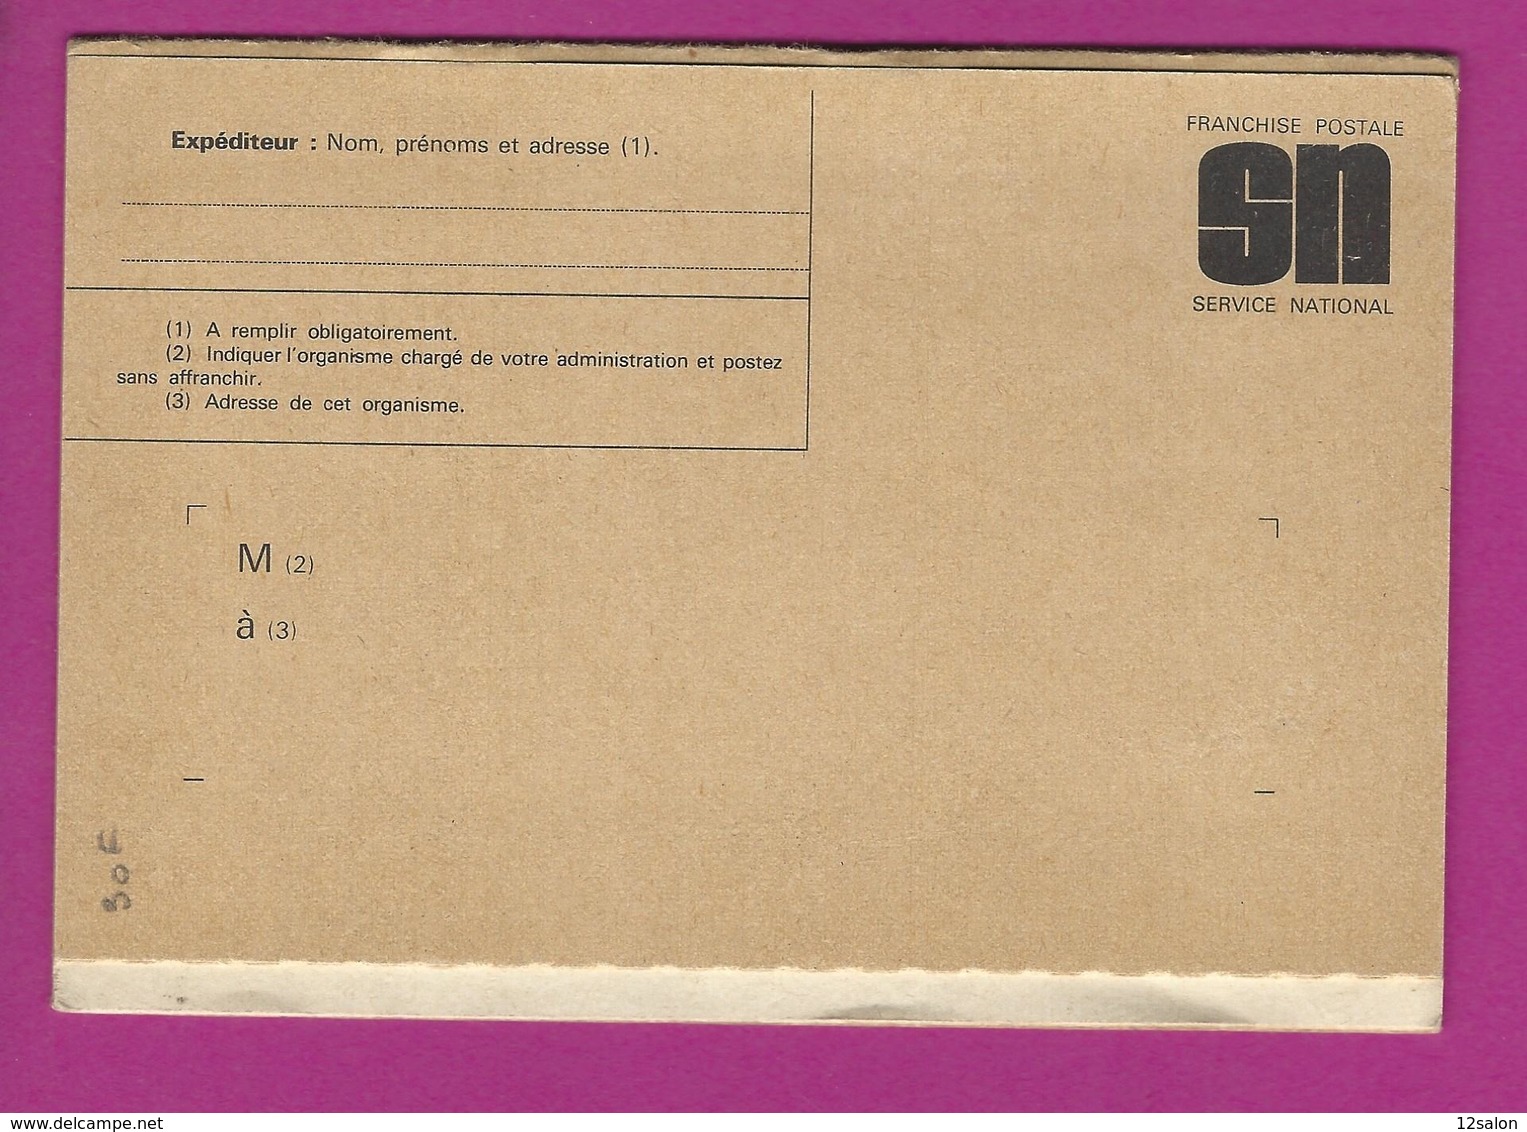 MEMENTO DU RESERVISTE 1974 - Documenten